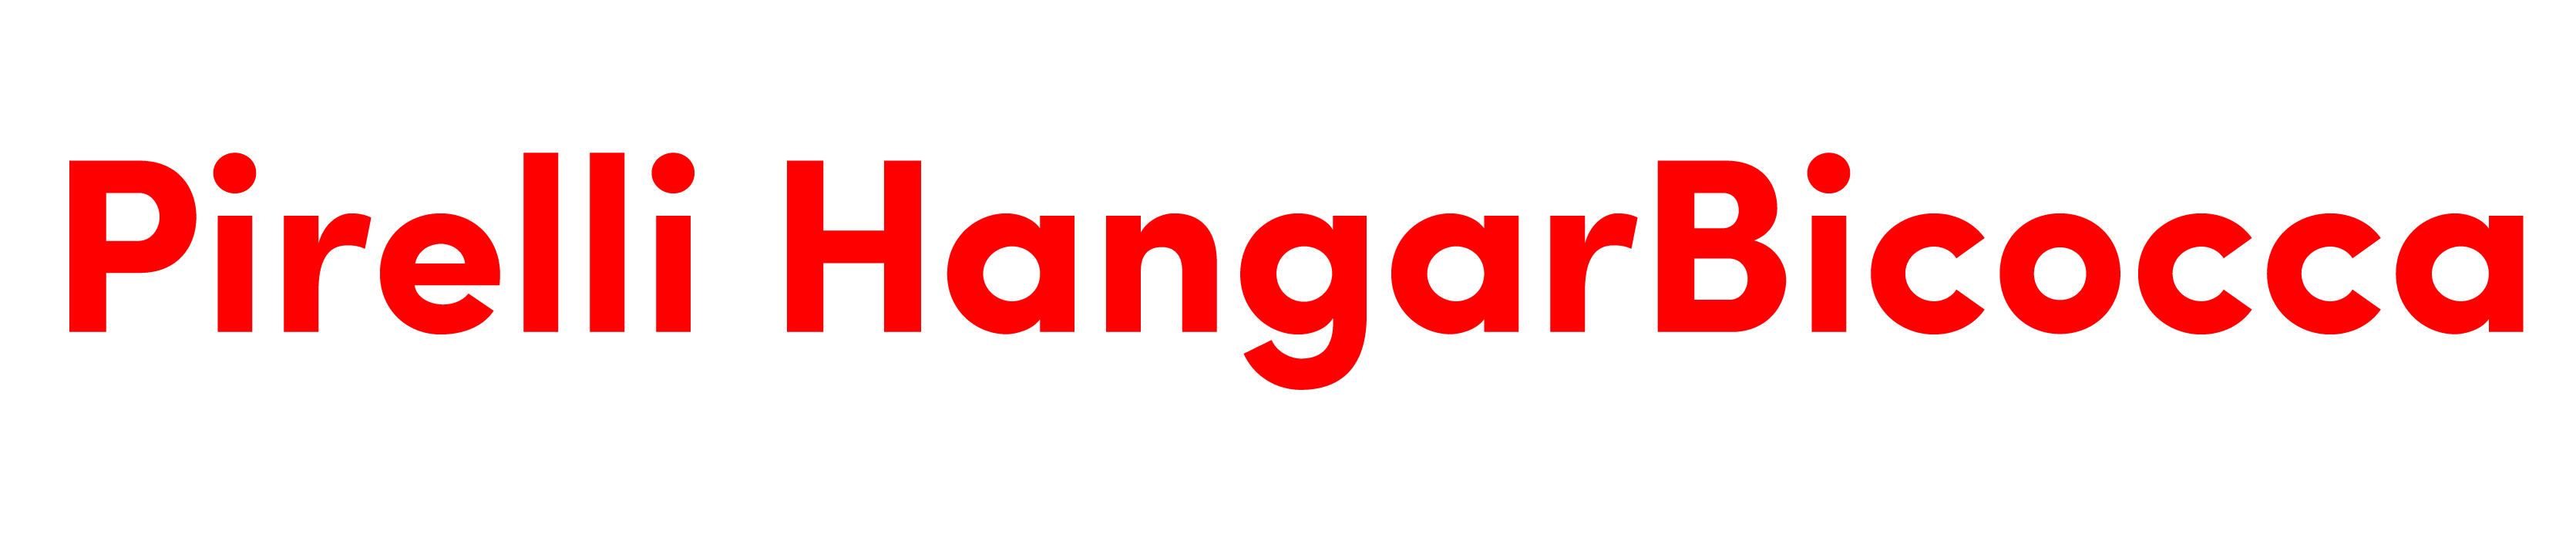 Pirelli HangarBicocca lettering rosso taglio